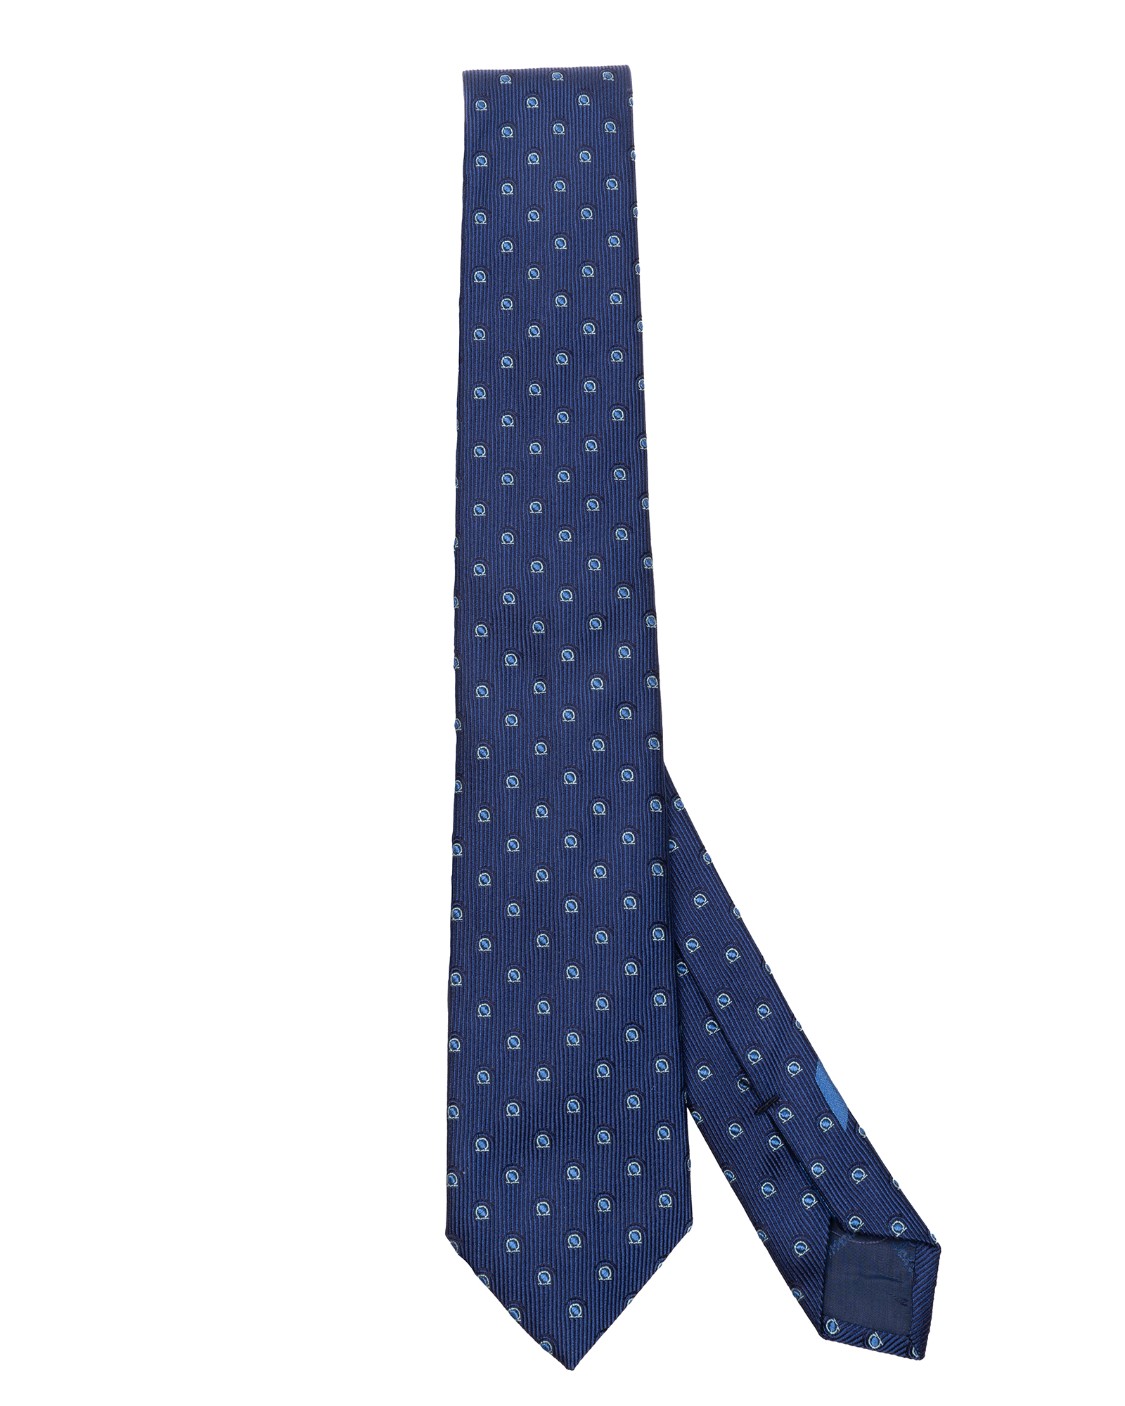 shop SALVATORE FERRAGAMO  Cravatta: Salvatore Ferragamo cravatta in seta stampa gancini.
Cravatta in pura seta decorata con pattern di gancini stilizzati.
Composizione: 100% seta.
Made in Italy.. 357742 CR4 FABRIAN7-002 number 3820660